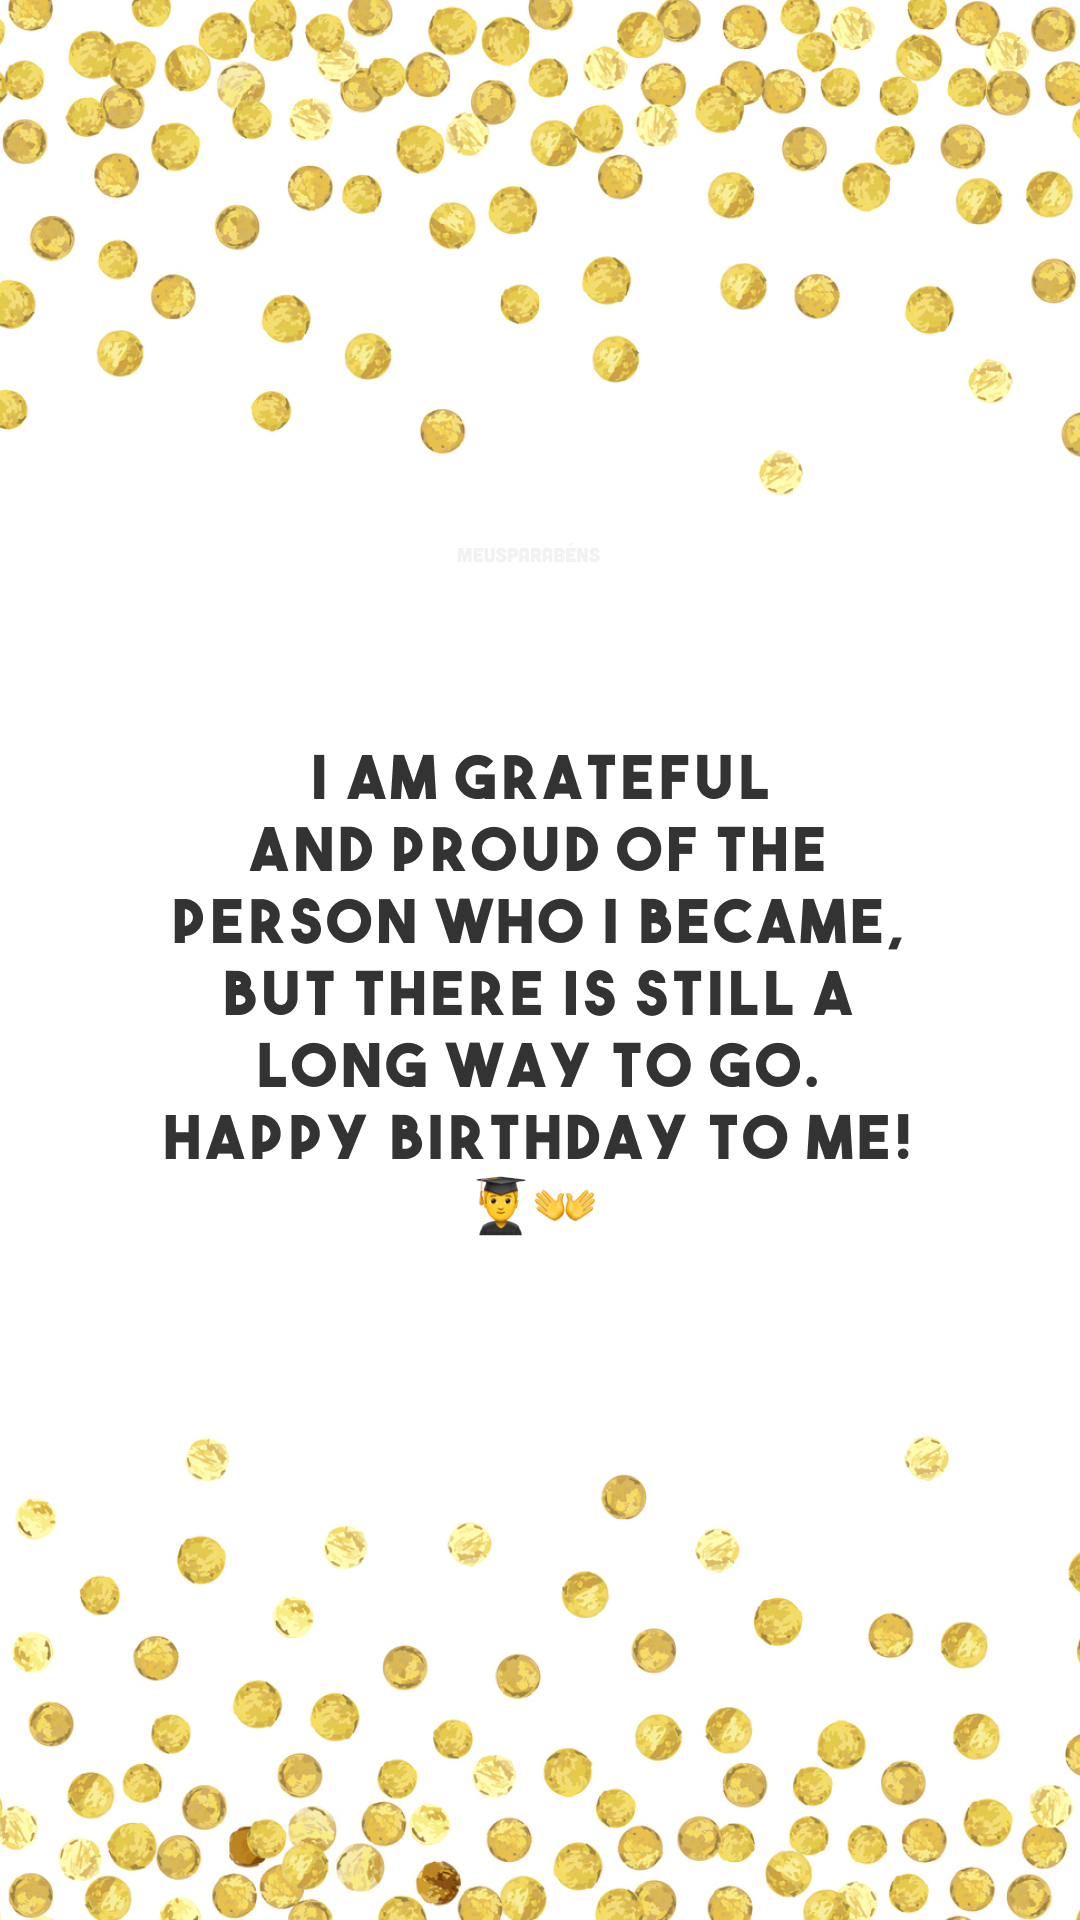 I am grateful and proud of the person who I became, but there is still a long way to go. Happy birthday to me! 👨‍🎓👐

<p>(Sou grato e tenho orgulho da pessoa que me tornei, mas ainda há um longo caminho a percorrer. Feliz aniversário pra mim!)<p>